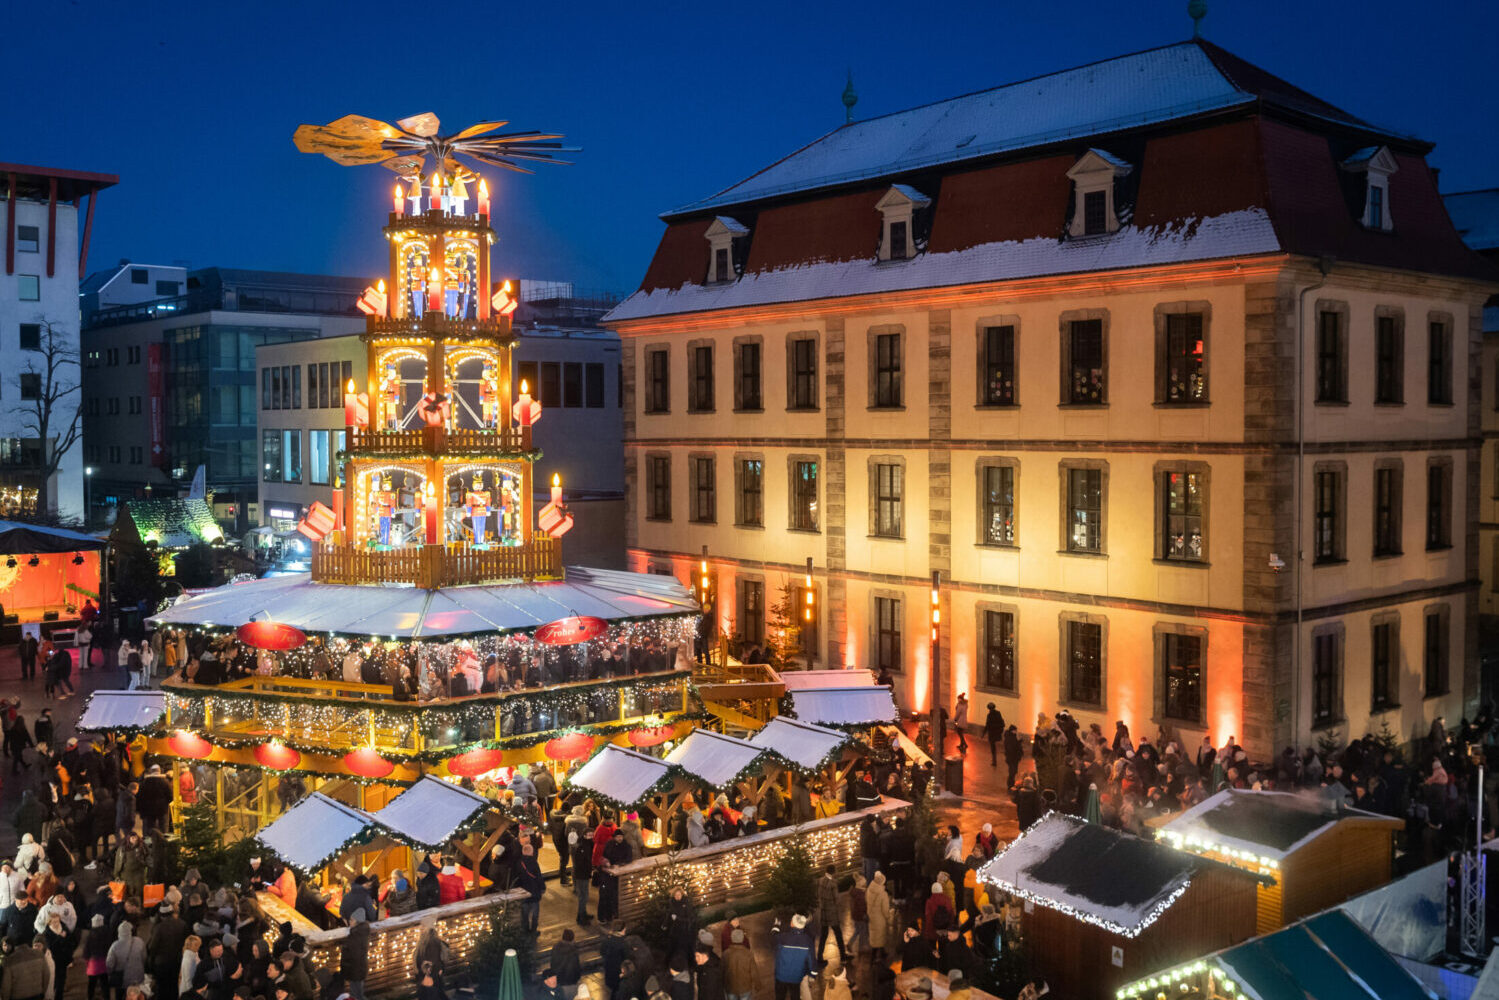 Weihnachtsmarkt Fulda